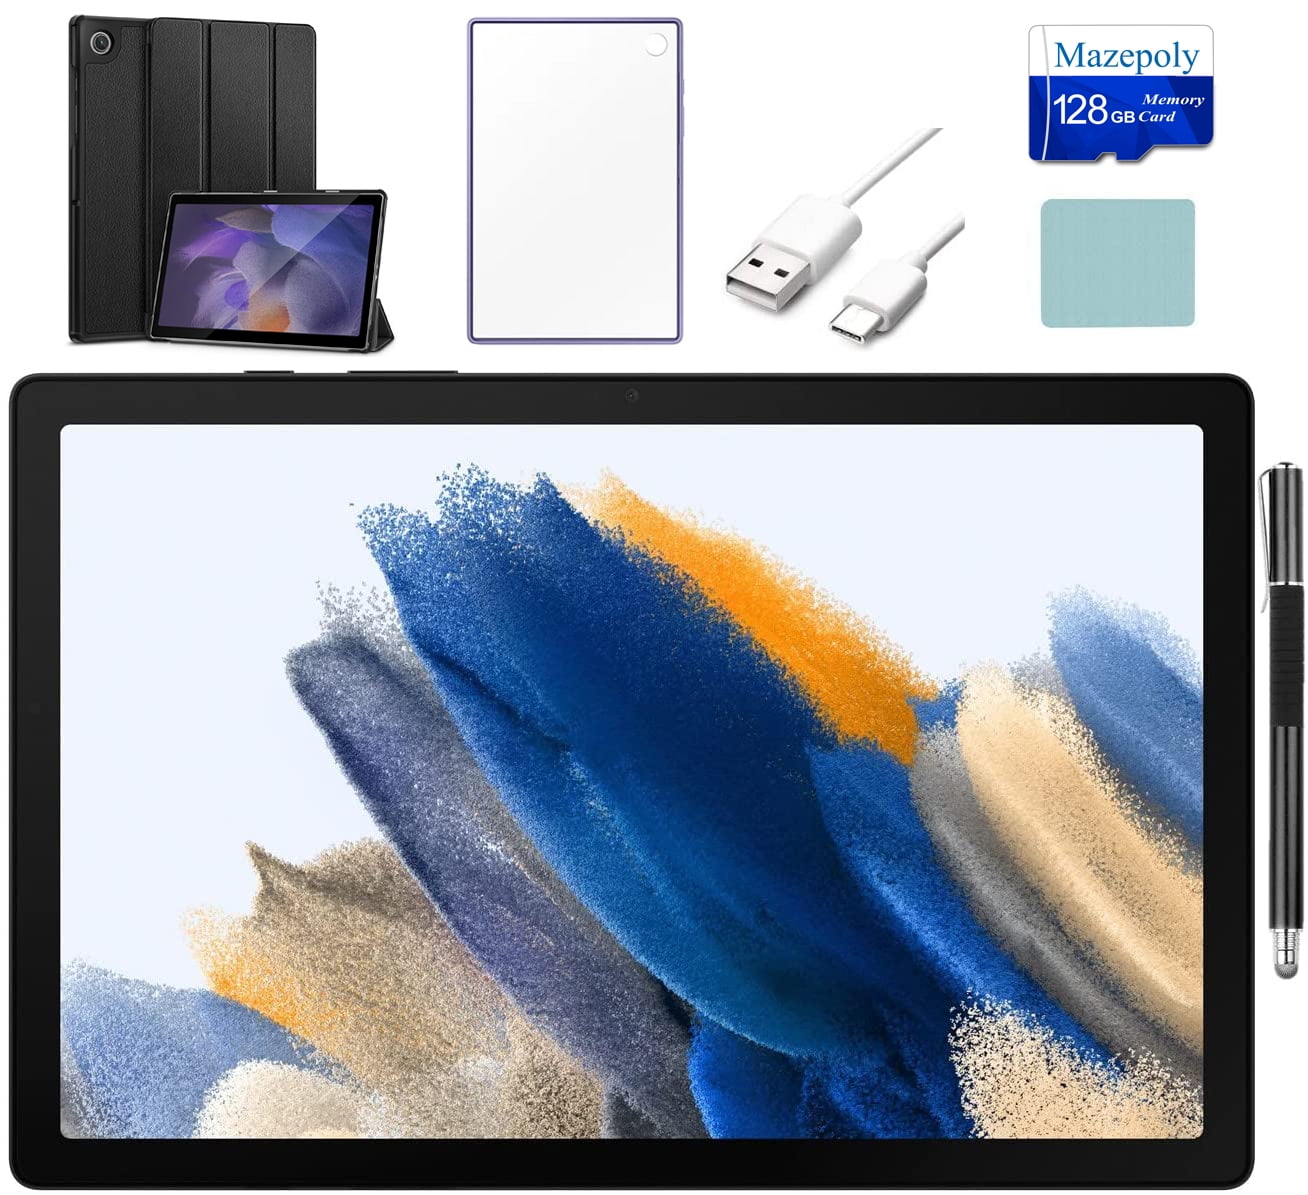 SM-X200NZAAXAR, Galaxy Tab A8 32GB, Gray (Wi-Fi)